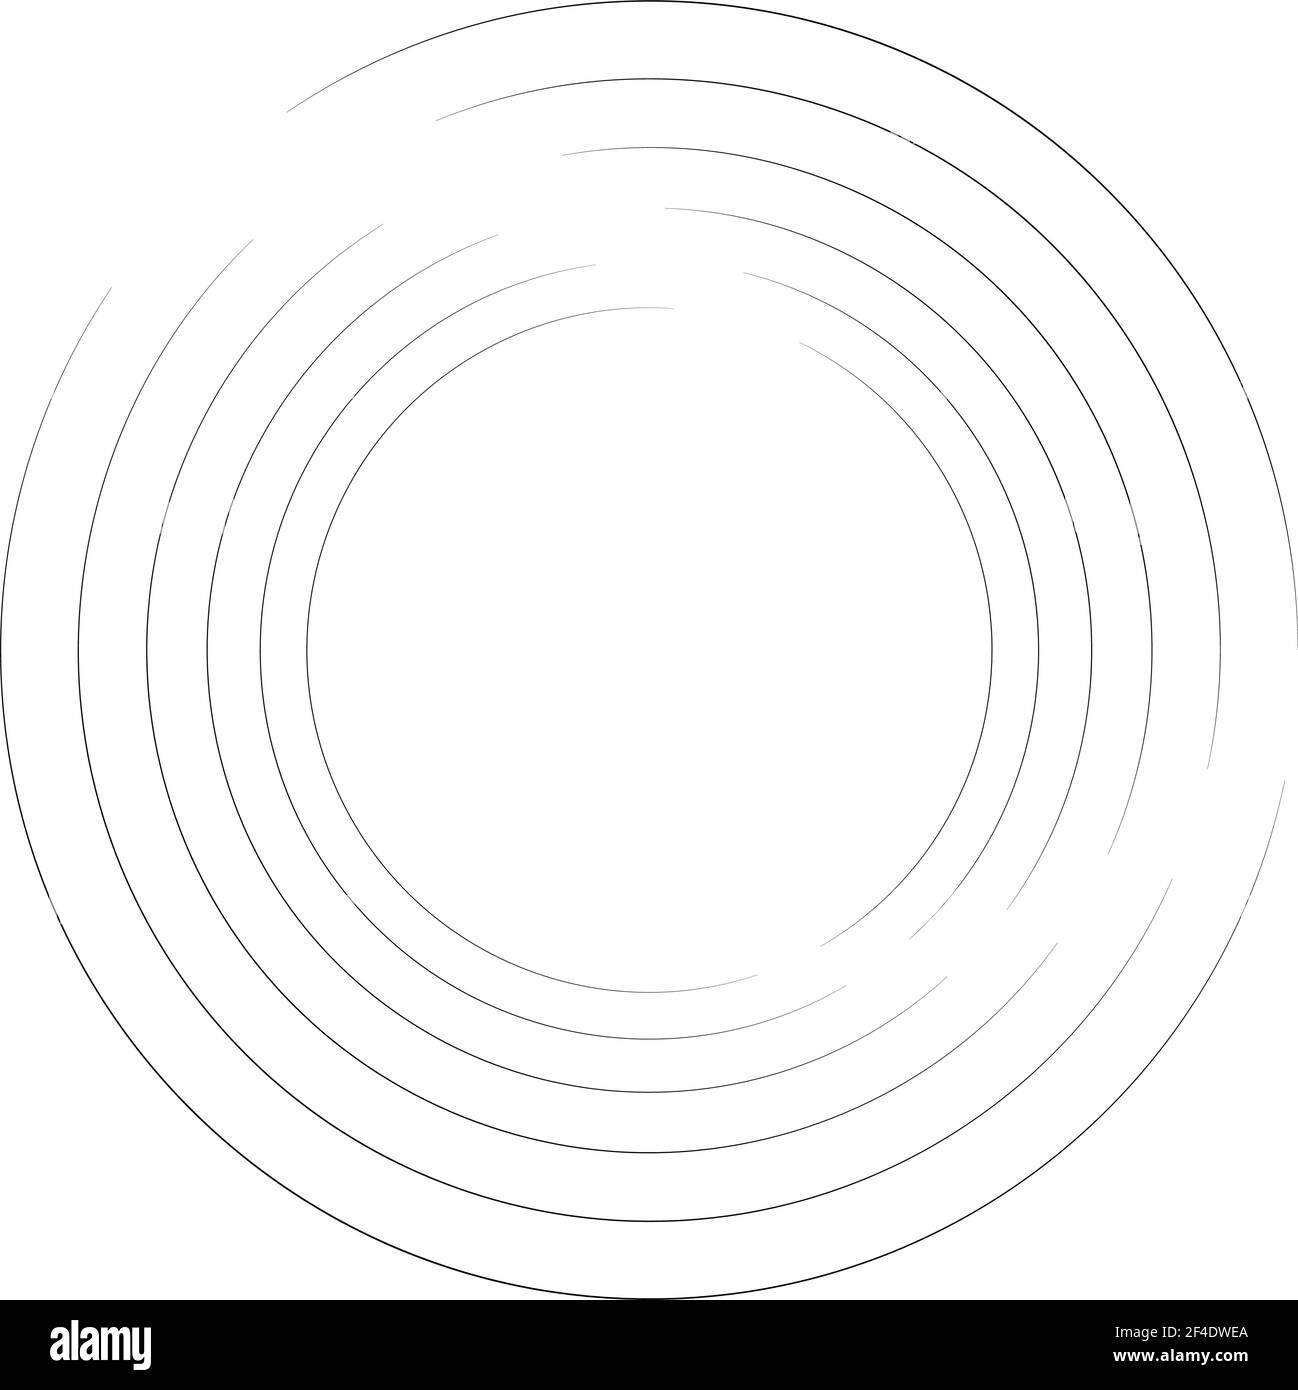 Cerchio ciclico, elica, elemento a spirale. Forma concentrica con effetto di rotazione, centrifuga e girazione. Illustrazione dei vettori di torsione, turbolenza e turbolenza – S Illustrazione Vettoriale